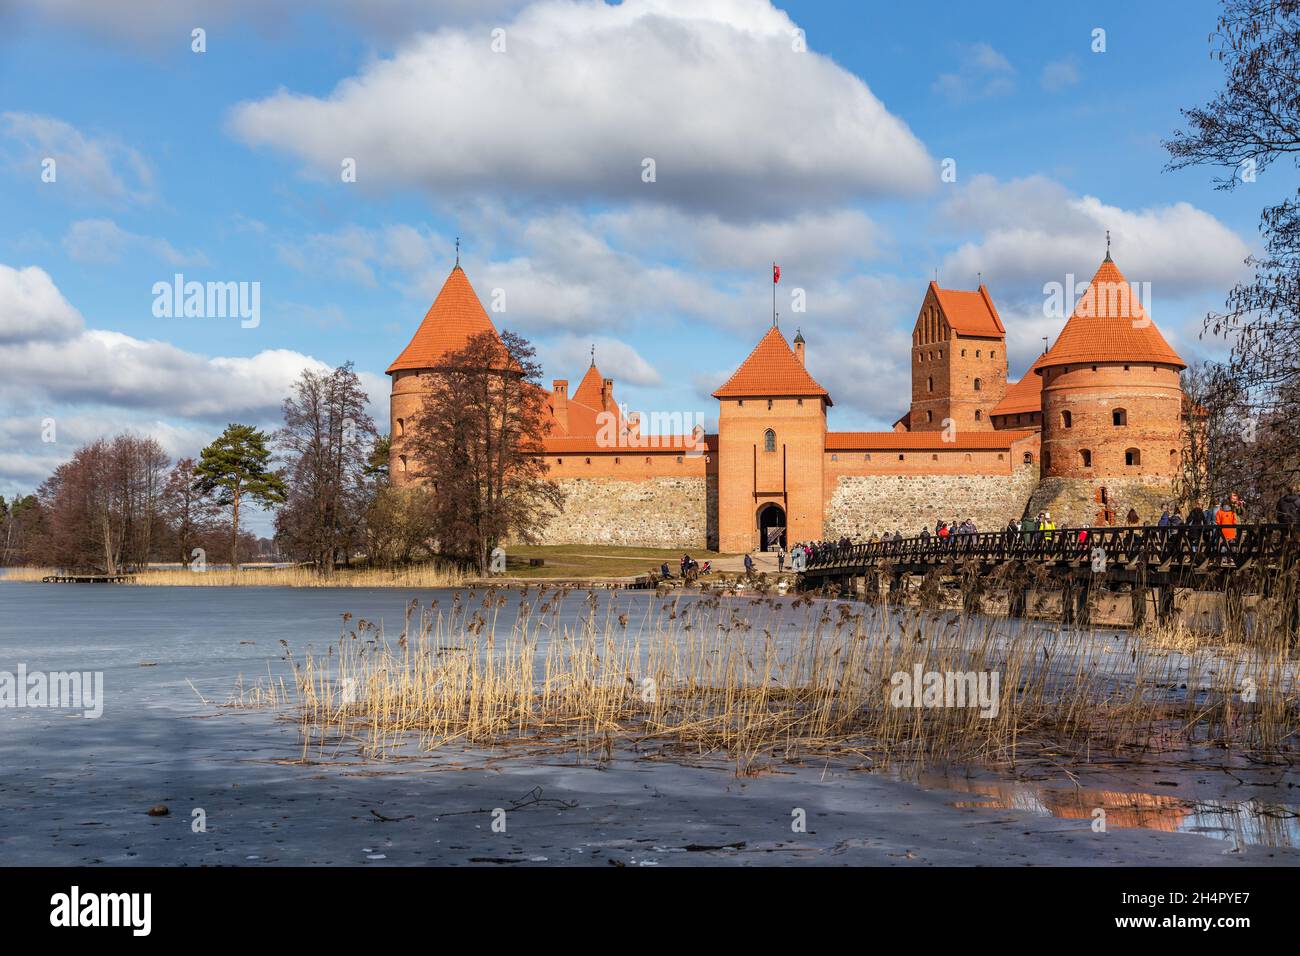 Les murs et tours orange du château de l'île Trakai, lac Galve, République de Lituanie Banque D'Images